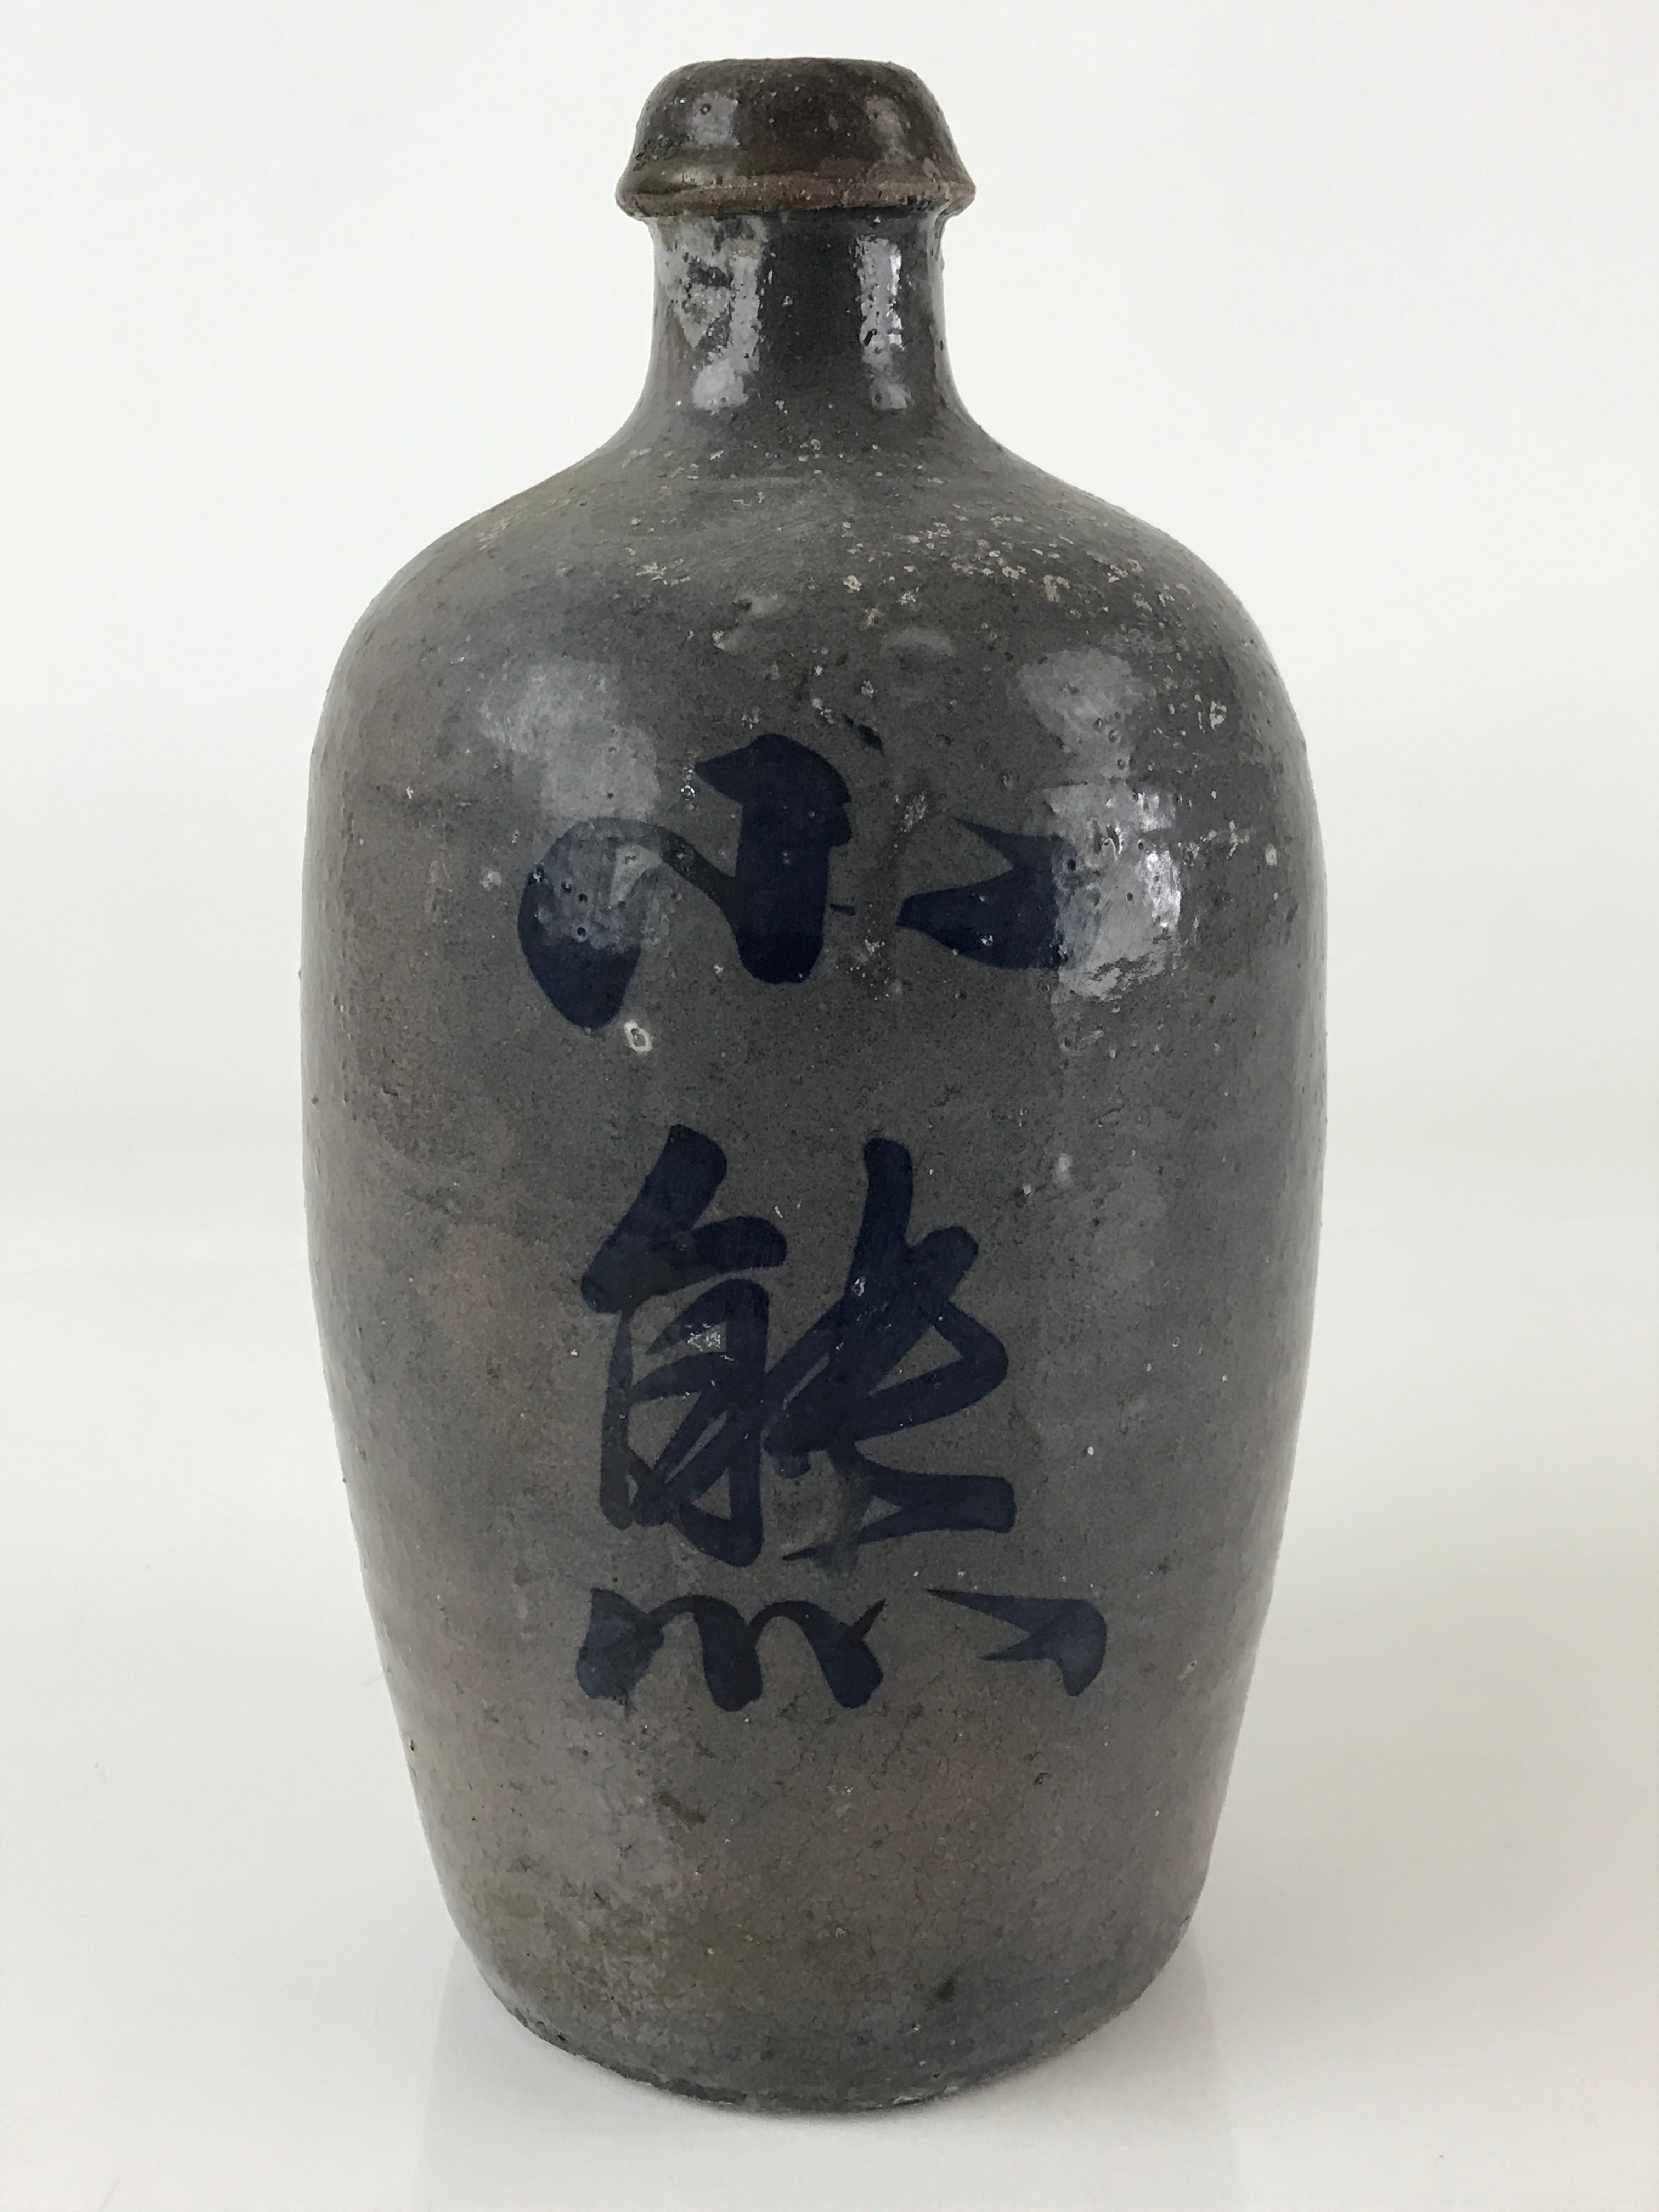 Japanese Ceramic Sake Bottle Tokkuri Vtg Pottery Brown Hand-Written Kanji TS486